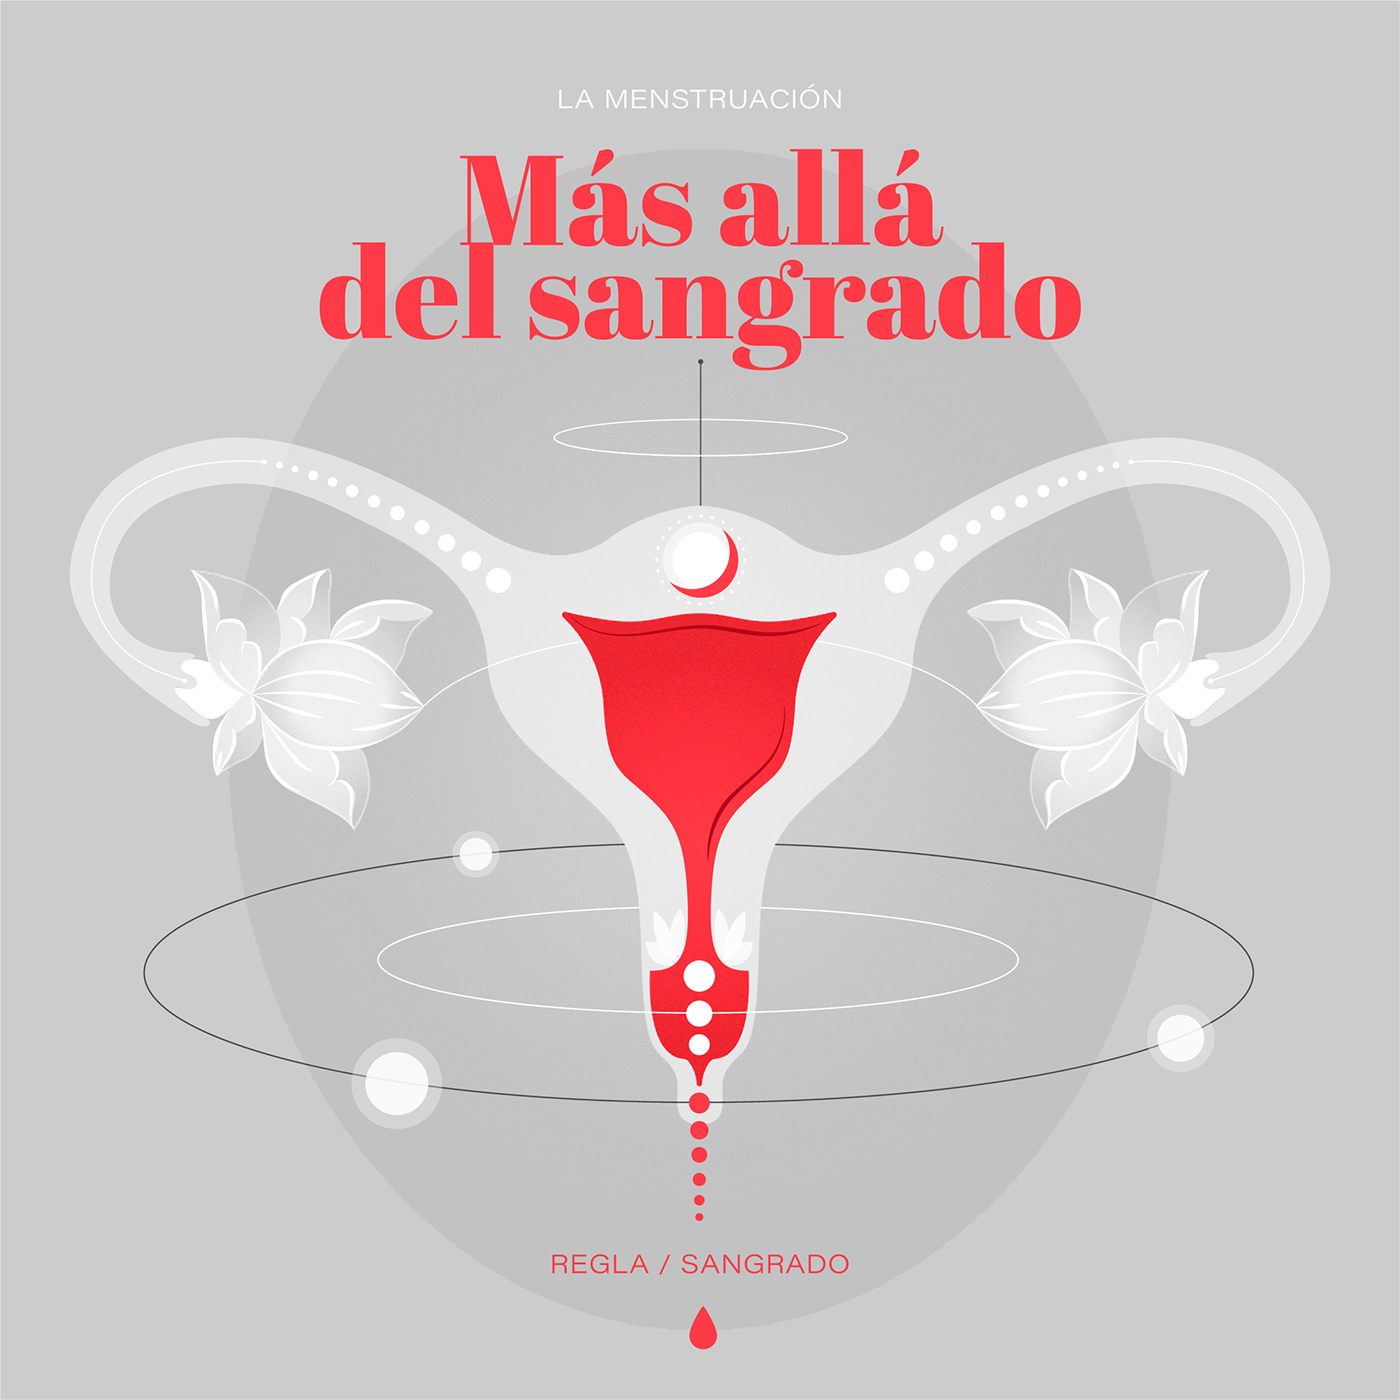 ILLUSTRATION  ilustración digital MENSTRUACIÓN menstruation Mujeres proyectos sociales redes sociales social media sociedad women